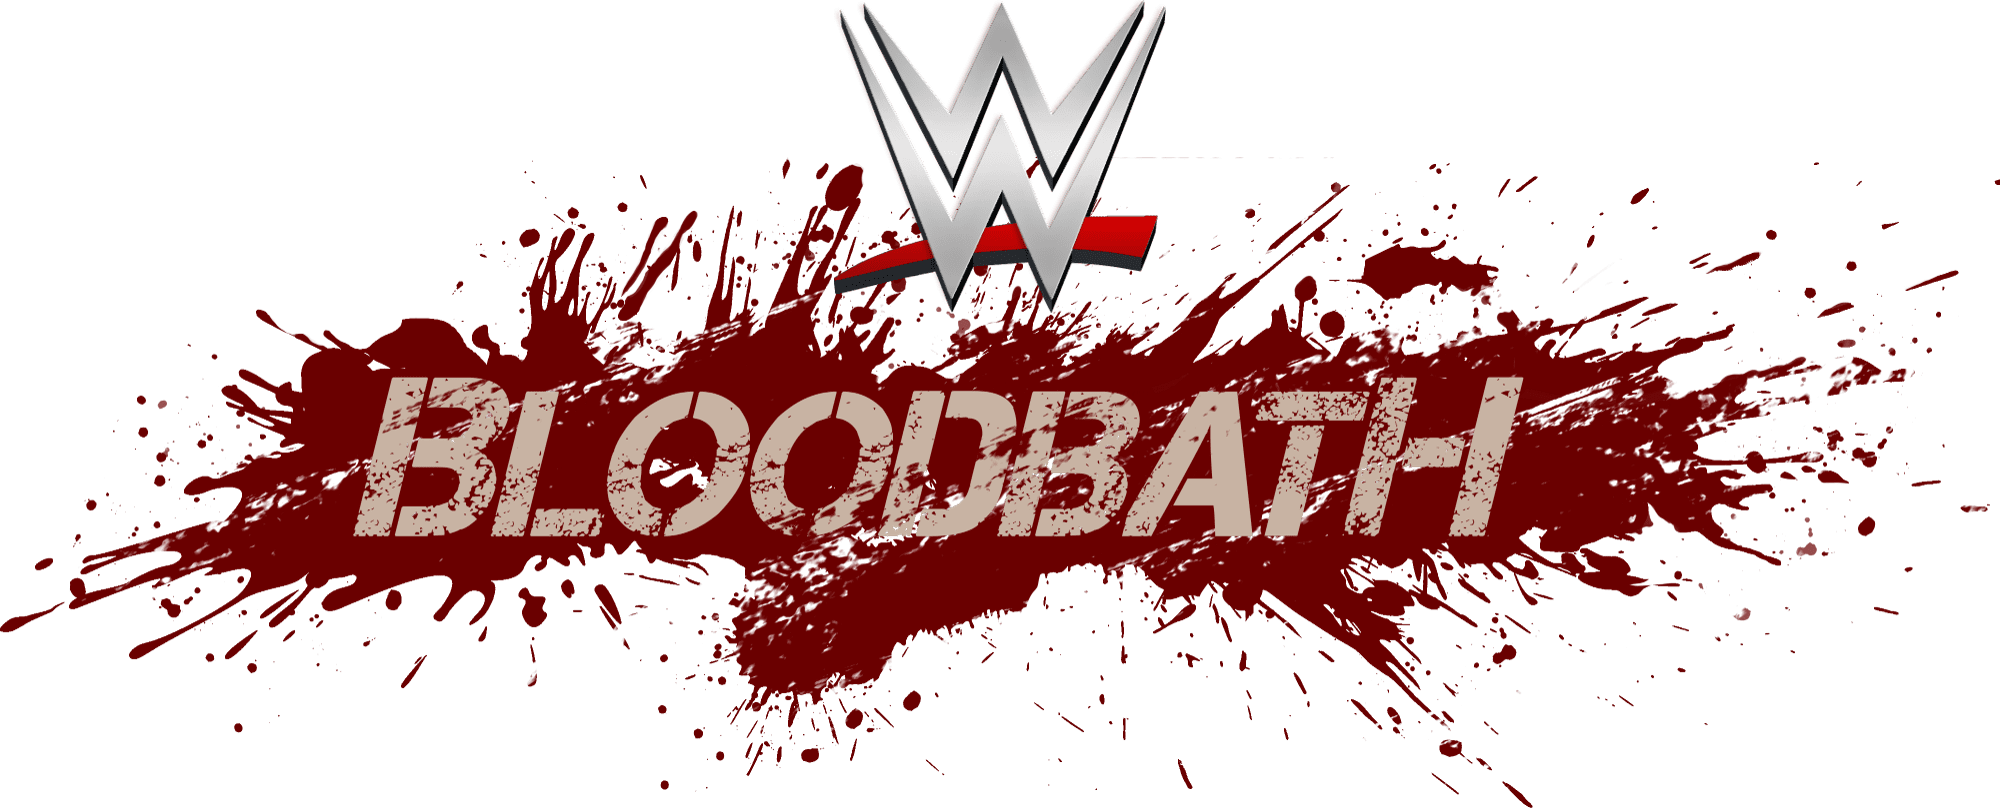 WWE Bloodbath 2021 Wave 4 Sees WWE & NXT Firings Reach 60! Inside Pulse